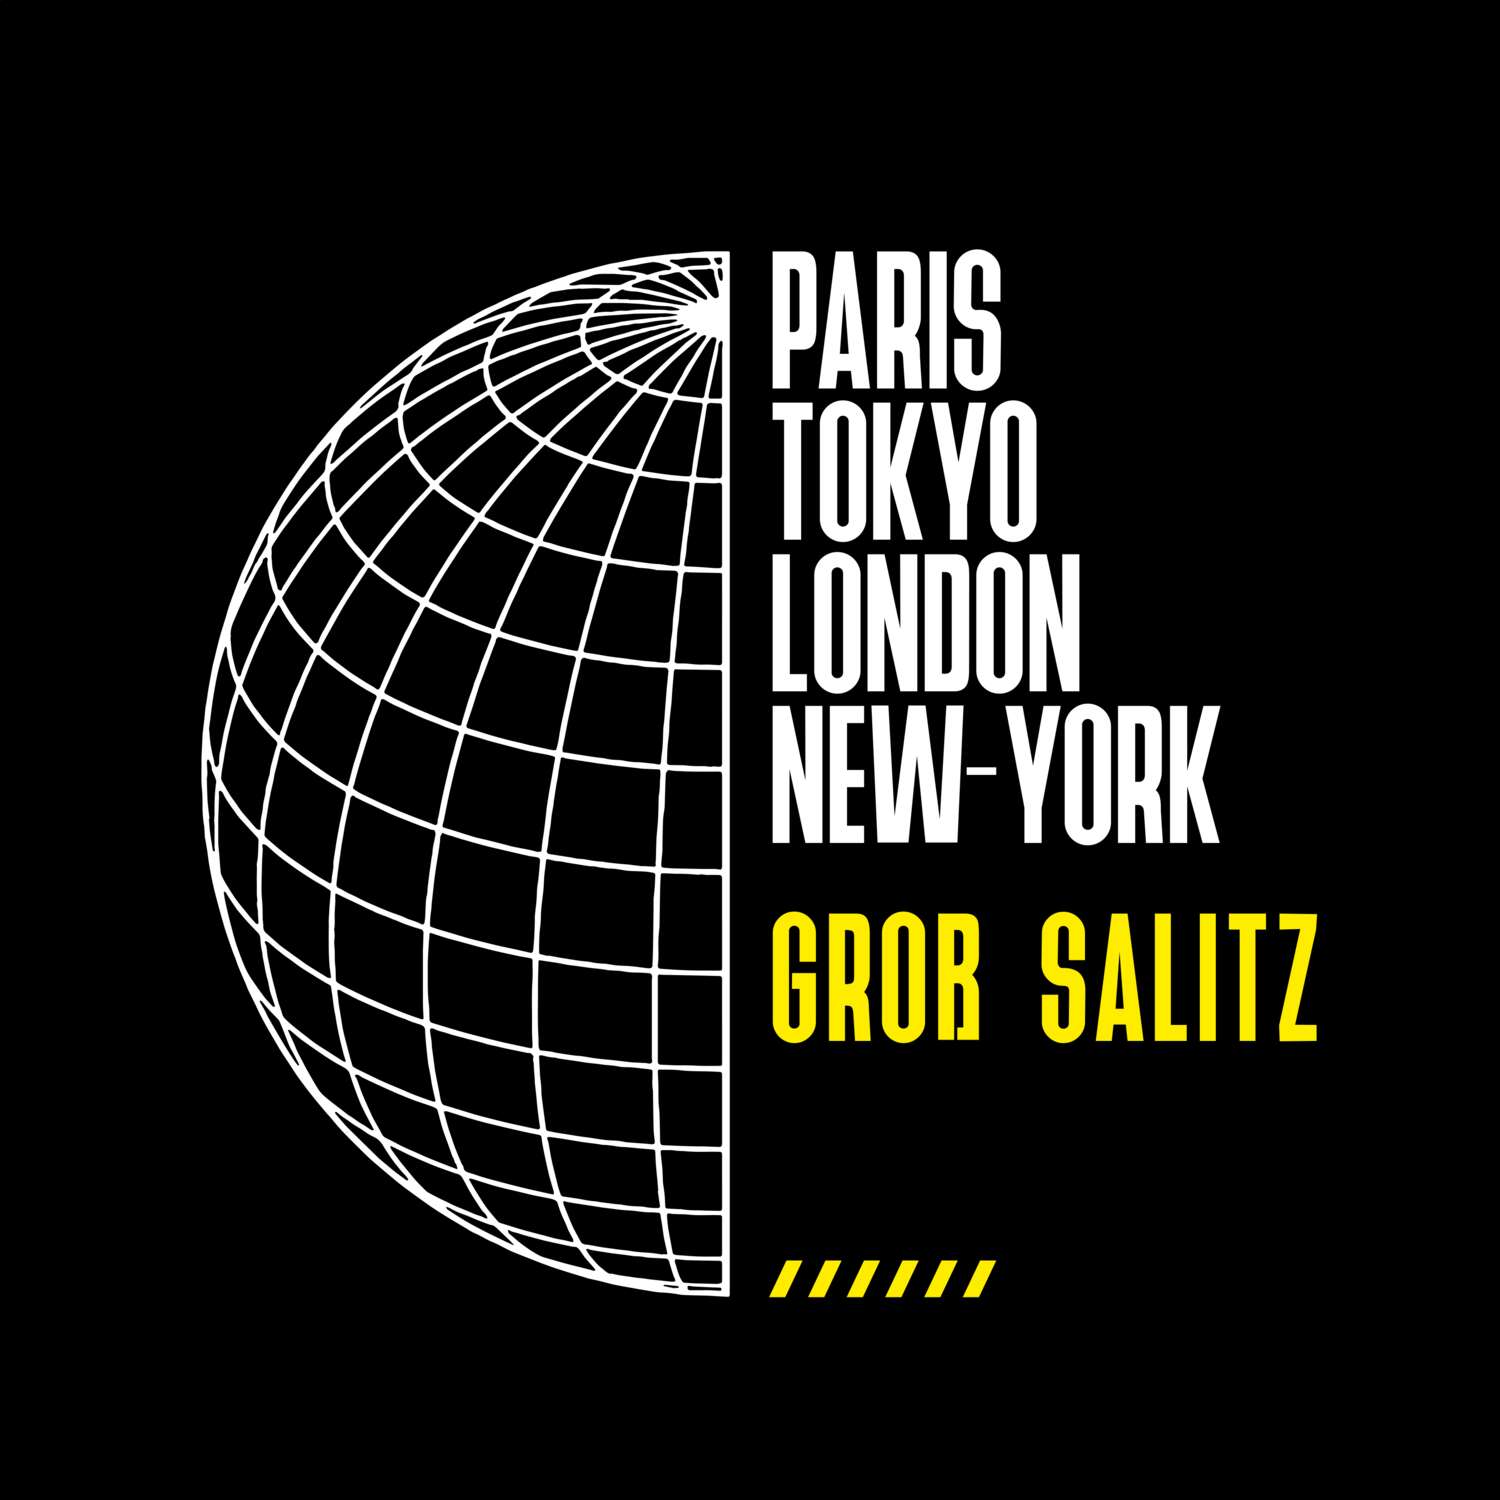 Groß Salitz T-Shirt »Paris Tokyo London«